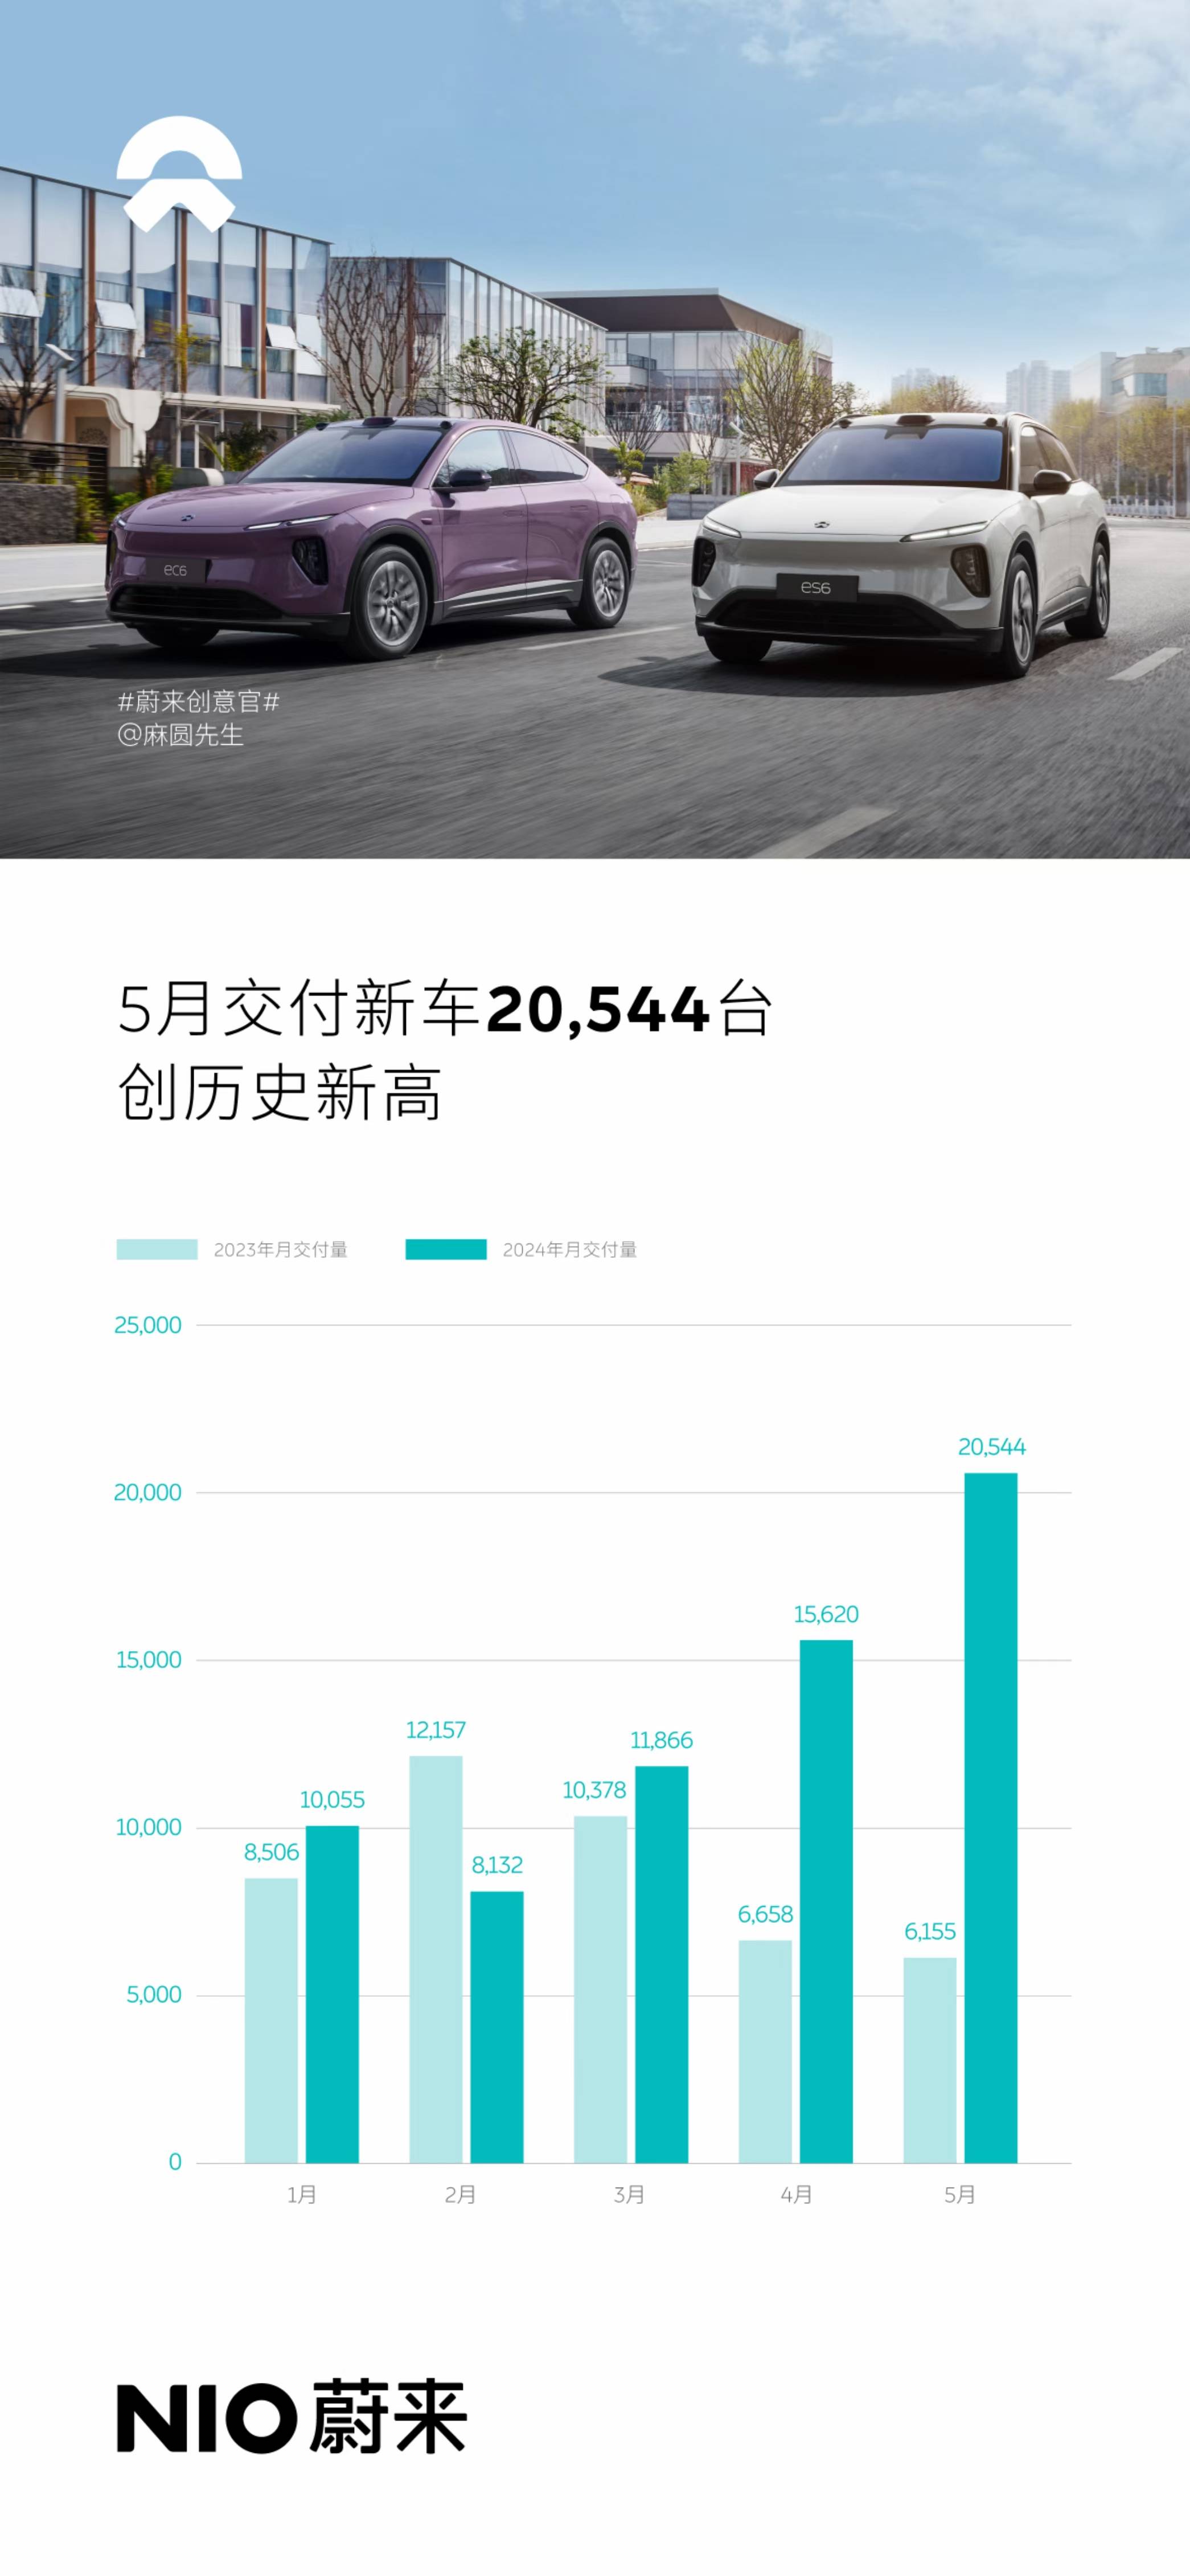 搜狐汽车全球快讯 同比增长233.8% 蔚来5月交付新车20544辆